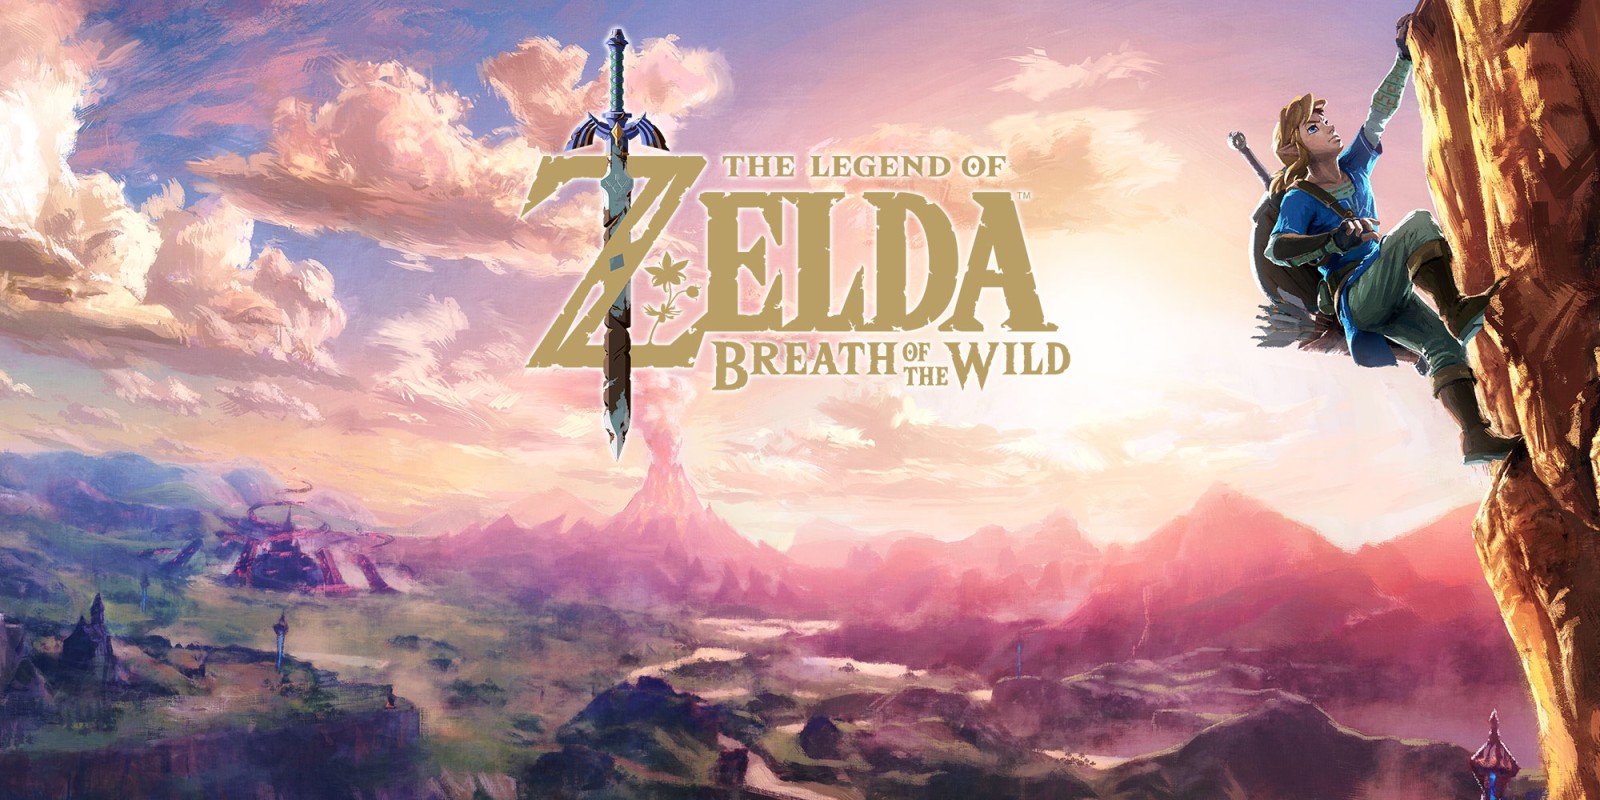 Zelda : The Legend of Breath of the Wild